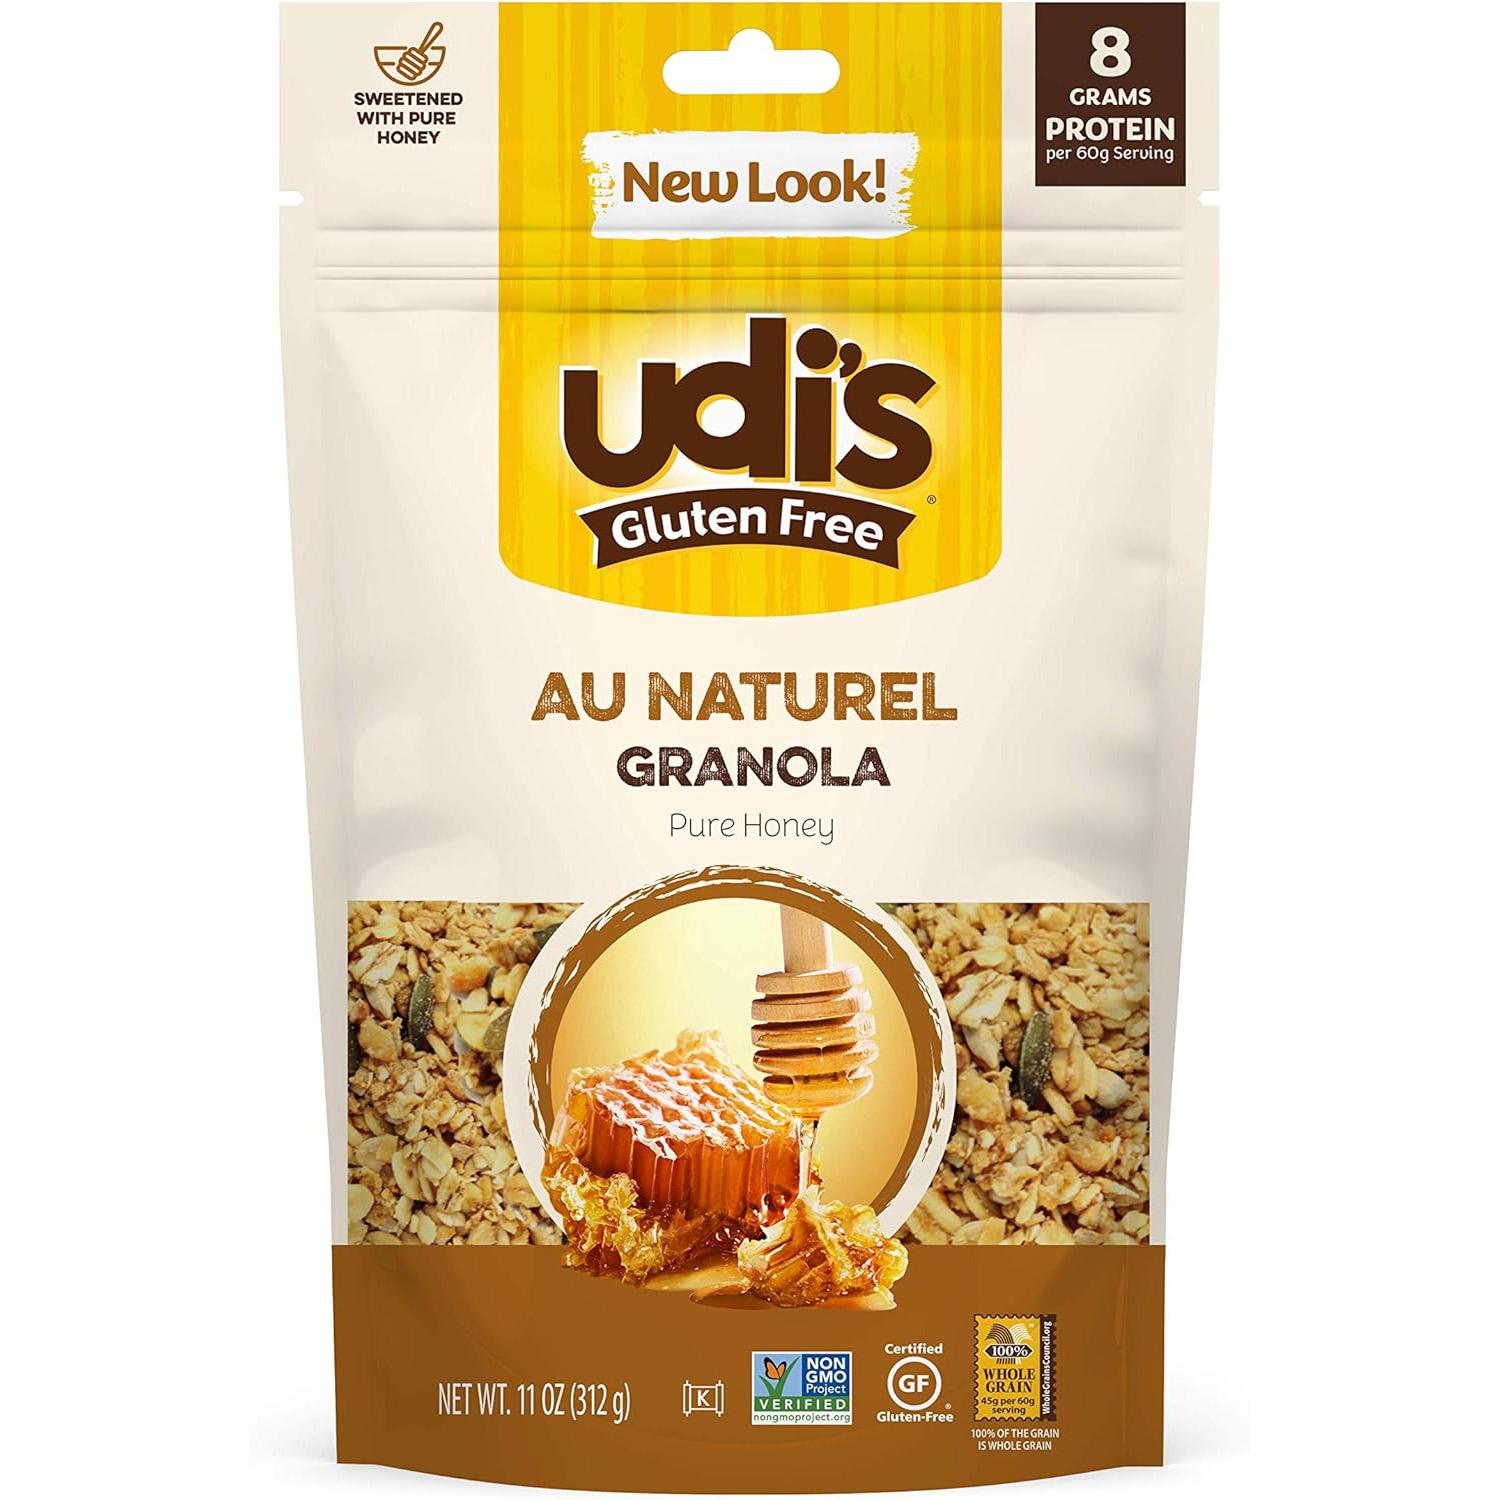 Udis Au Naturel Granola Pure Honey for $2.30 Shipped